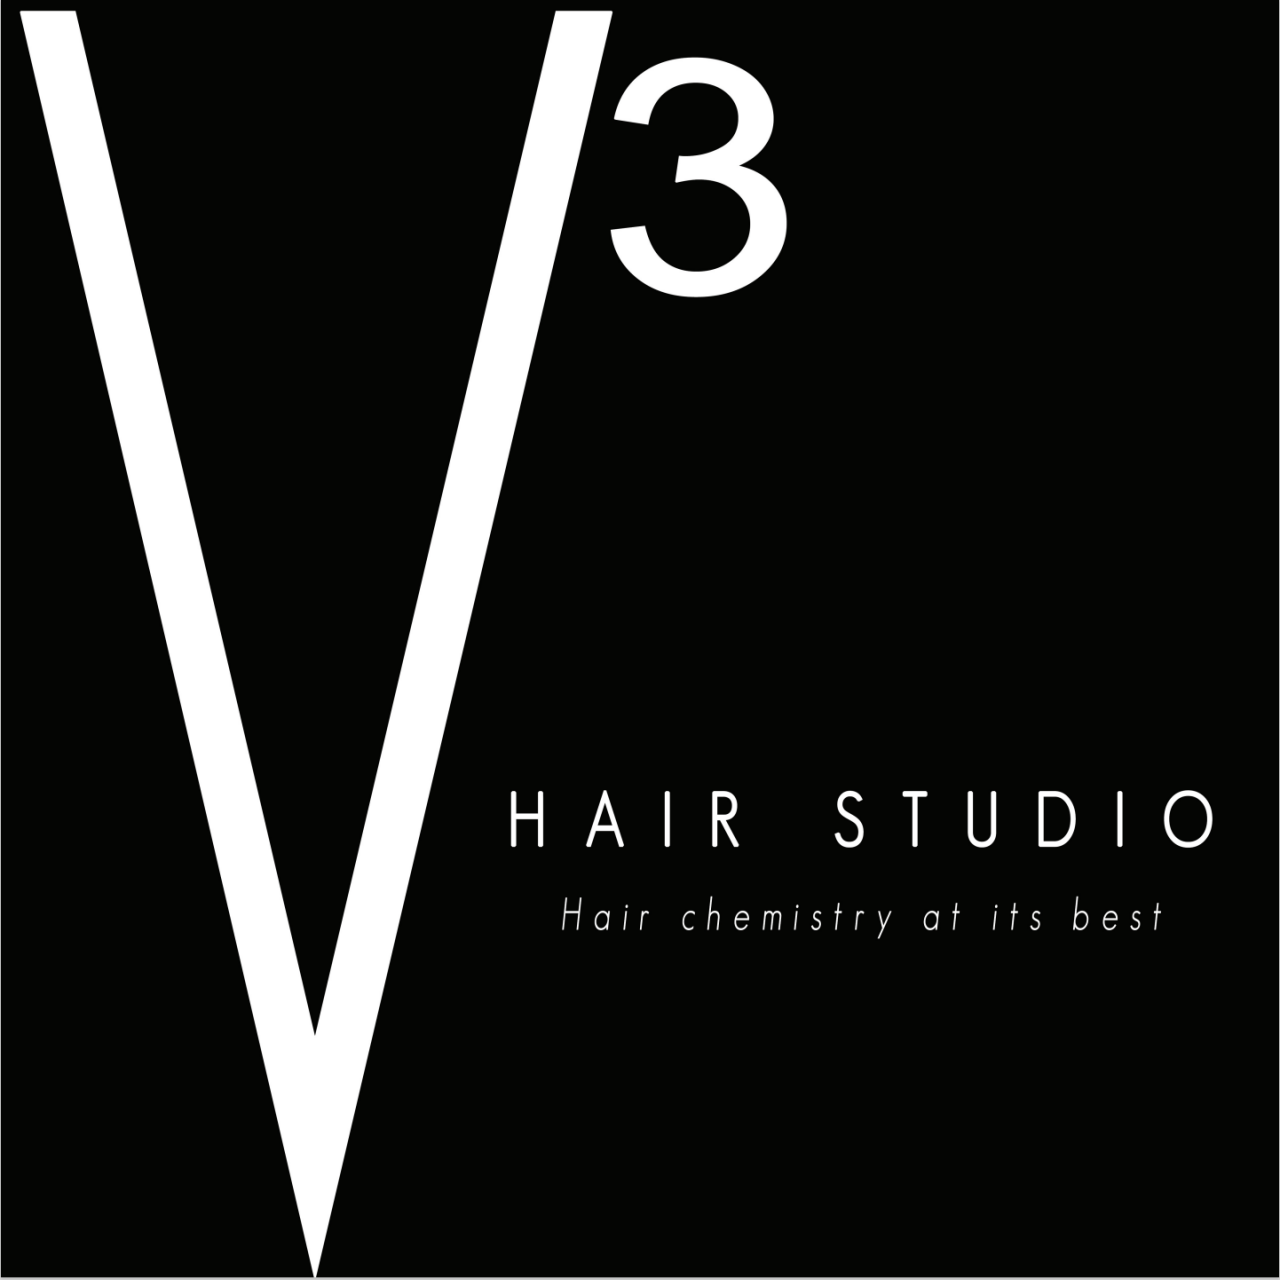 V3 logo